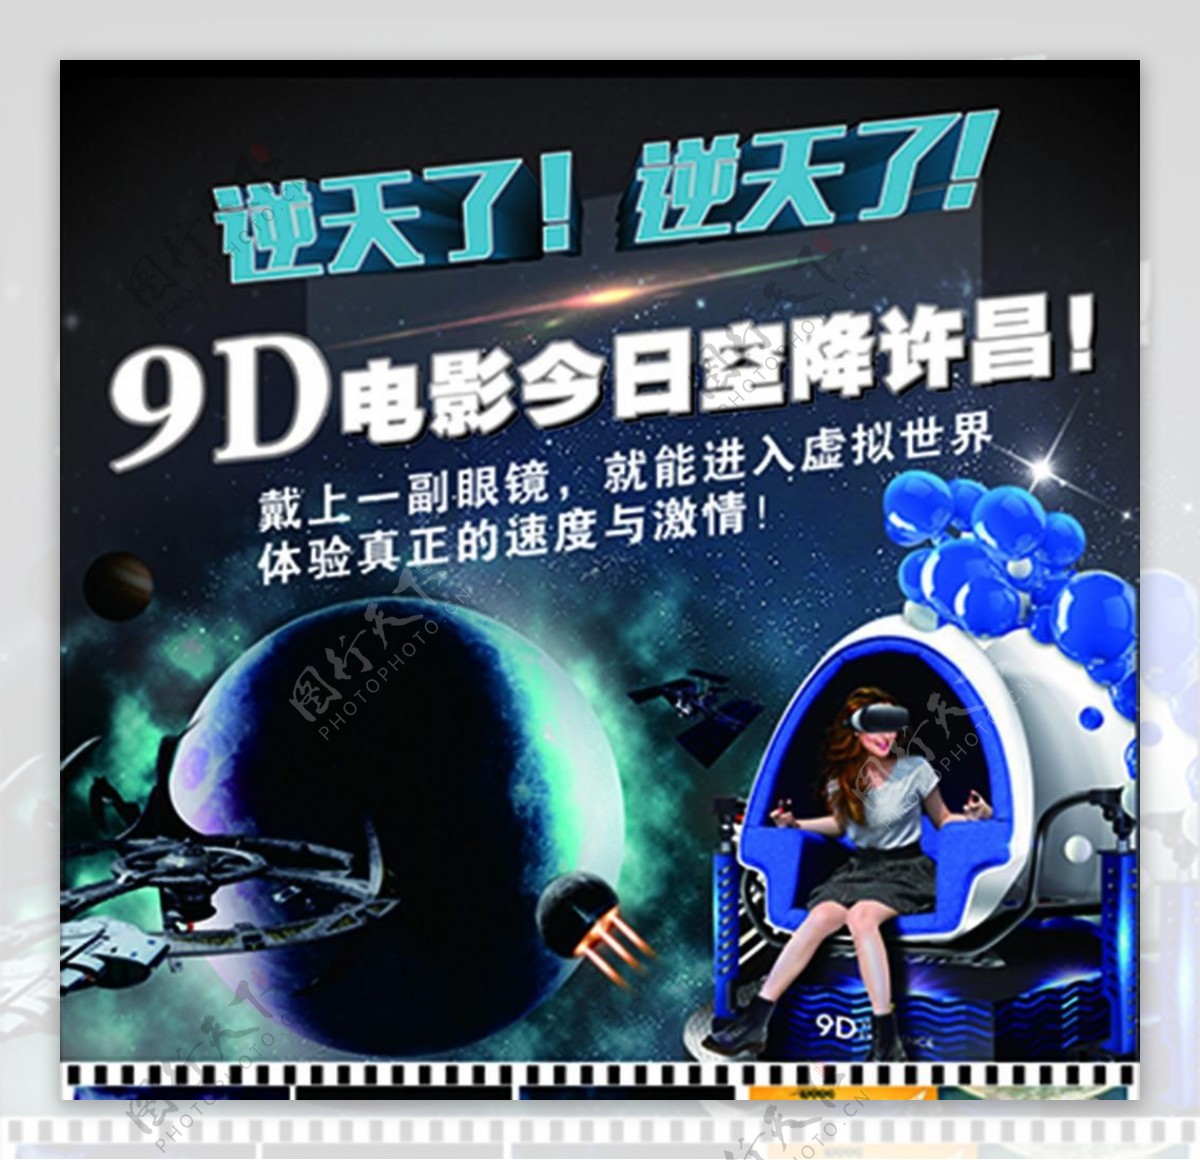 9D电影宣传活动模板源文件设计